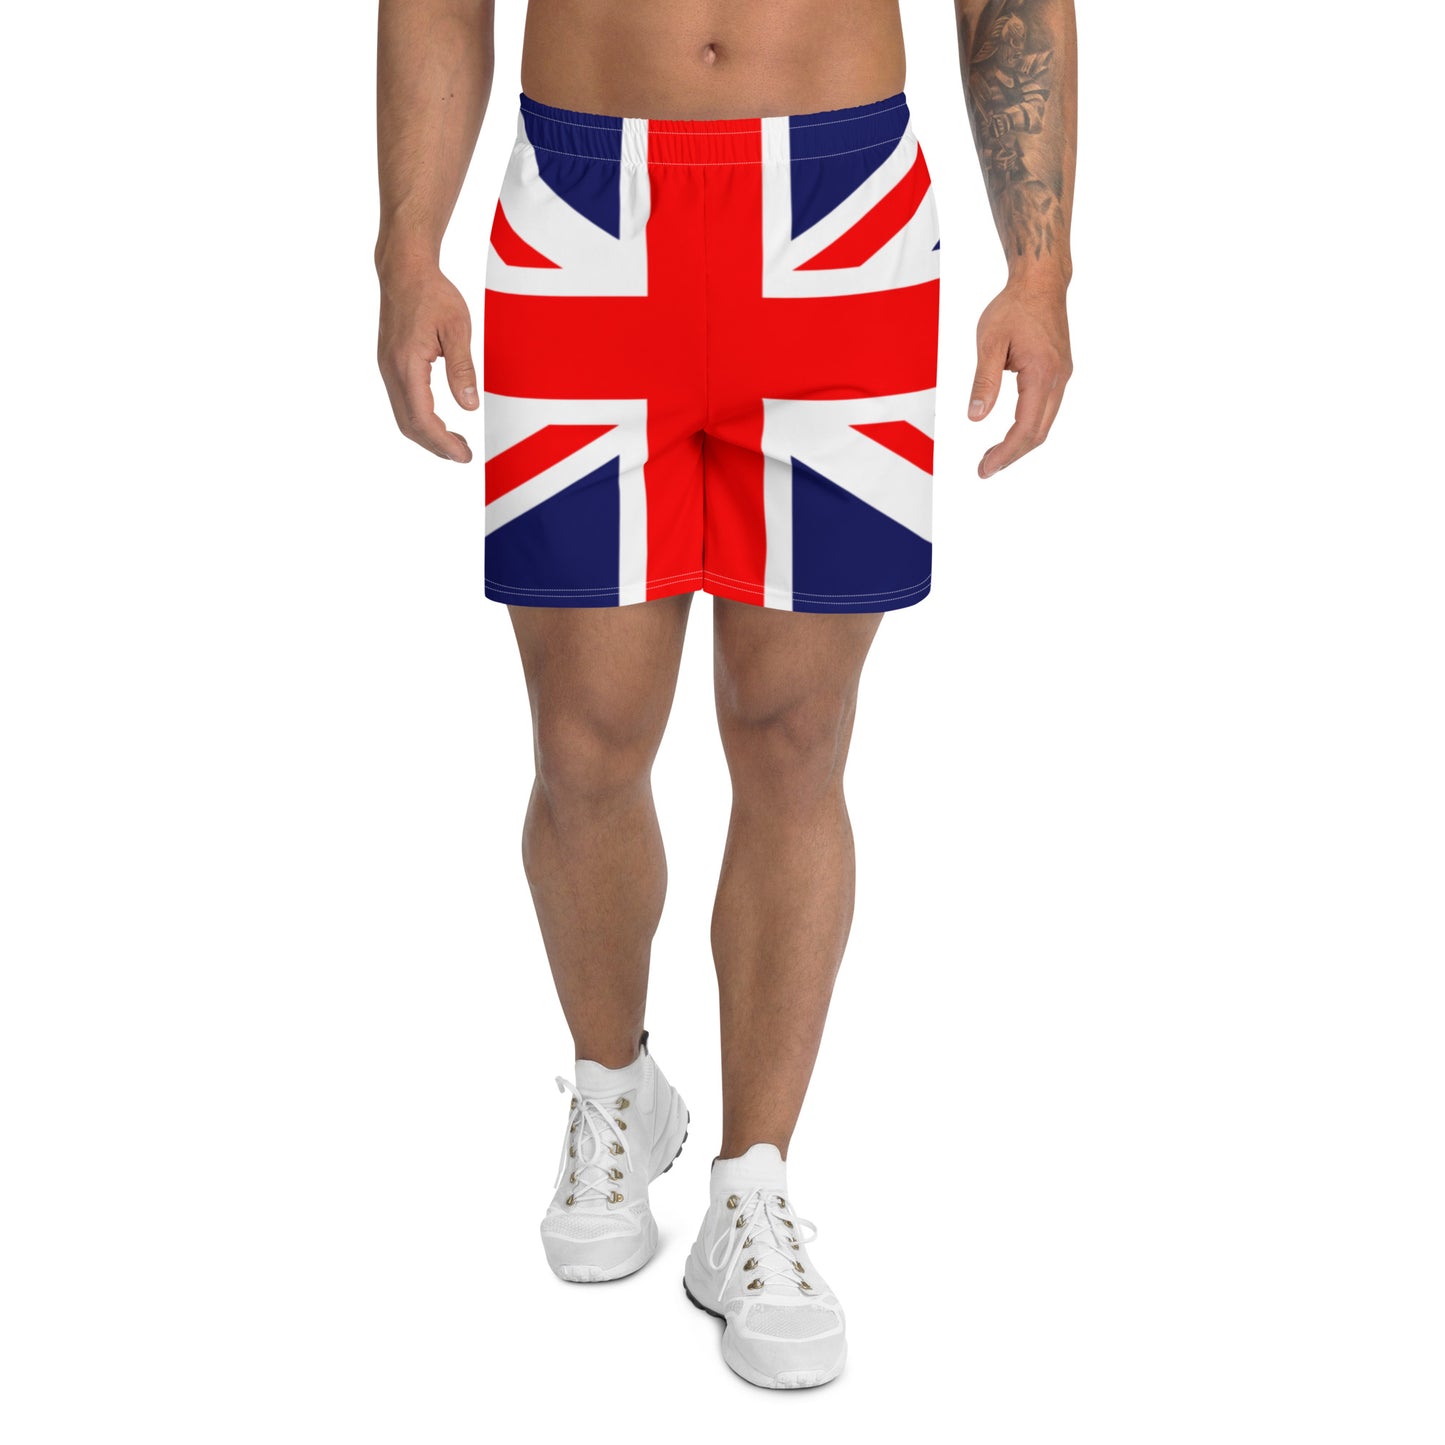 Homens do short de Union Jack/roupa de Union Jack/roupa britânica/roupa do patriota/eco amigável